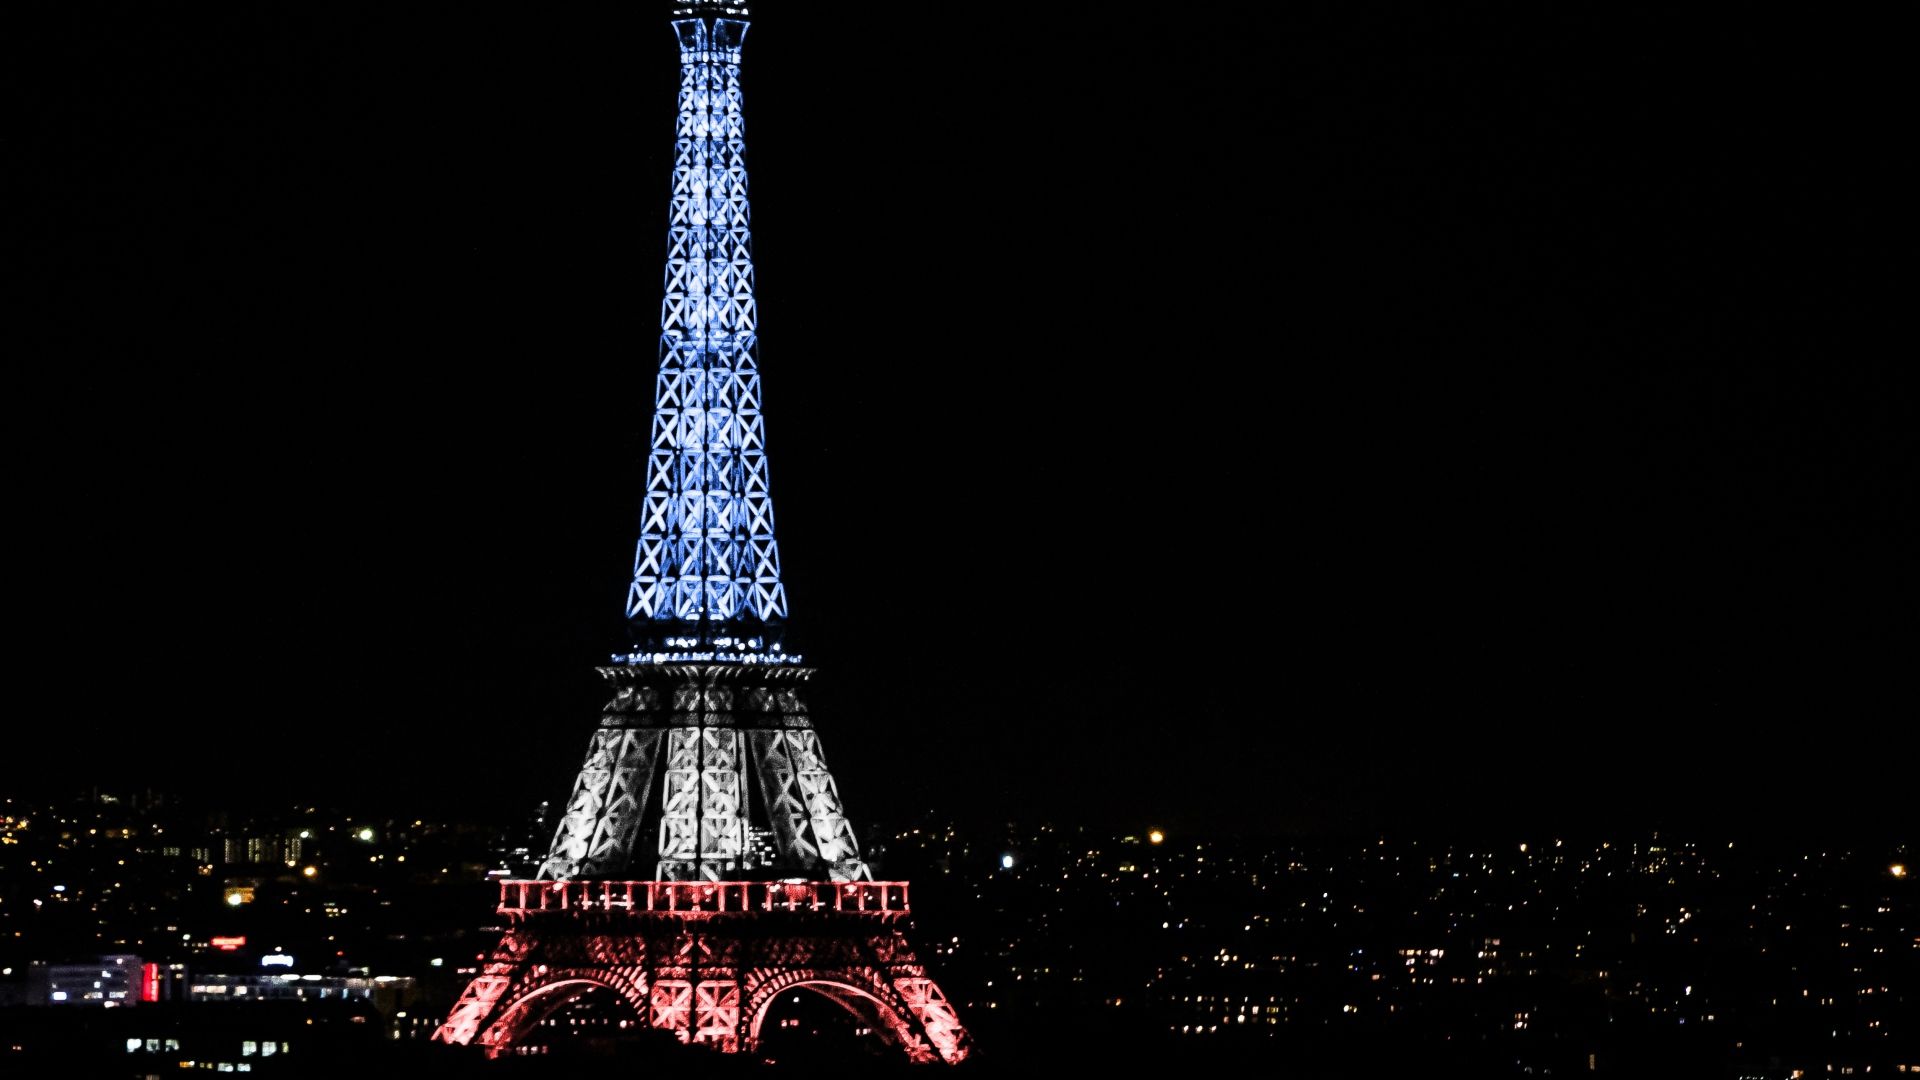 Fondos de pantalla gratis de la Torre Eiffel # N952348 | WallpapersExpert.com